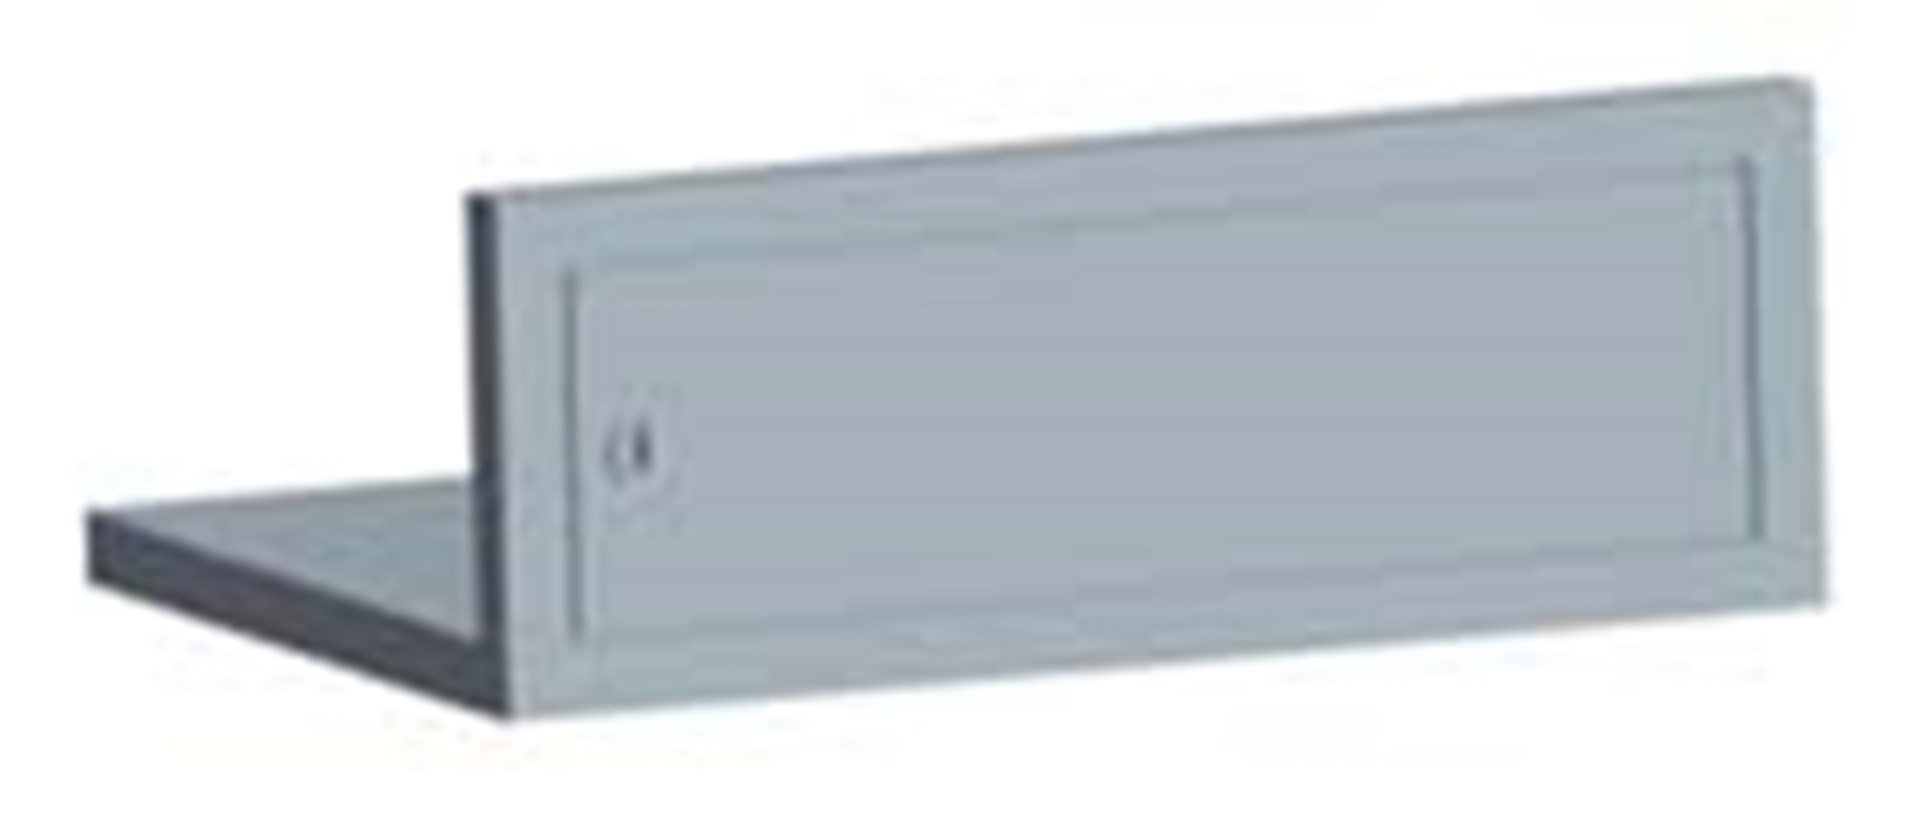 Notranji trezor, primeren za VO-A/1 in VO-A/2 ognjevarne varnostne omare.